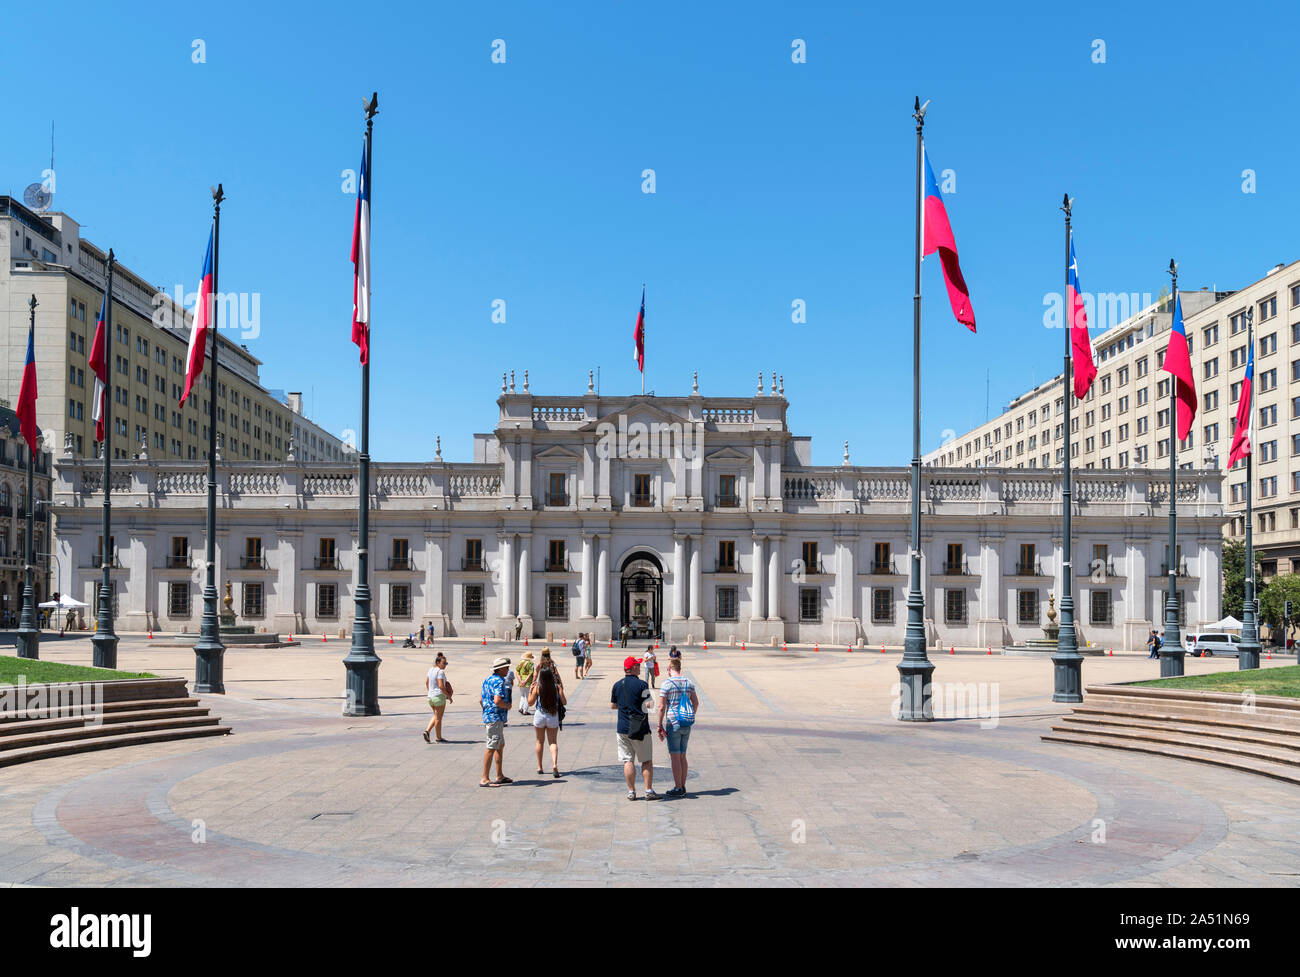 Le Palais de la Moneda, Santiago. Les touristes en face de l'hôtel Palacio de la Moneda, siège du président du Chili, Santiago, Chili, Amérique du Sud Banque D'Images